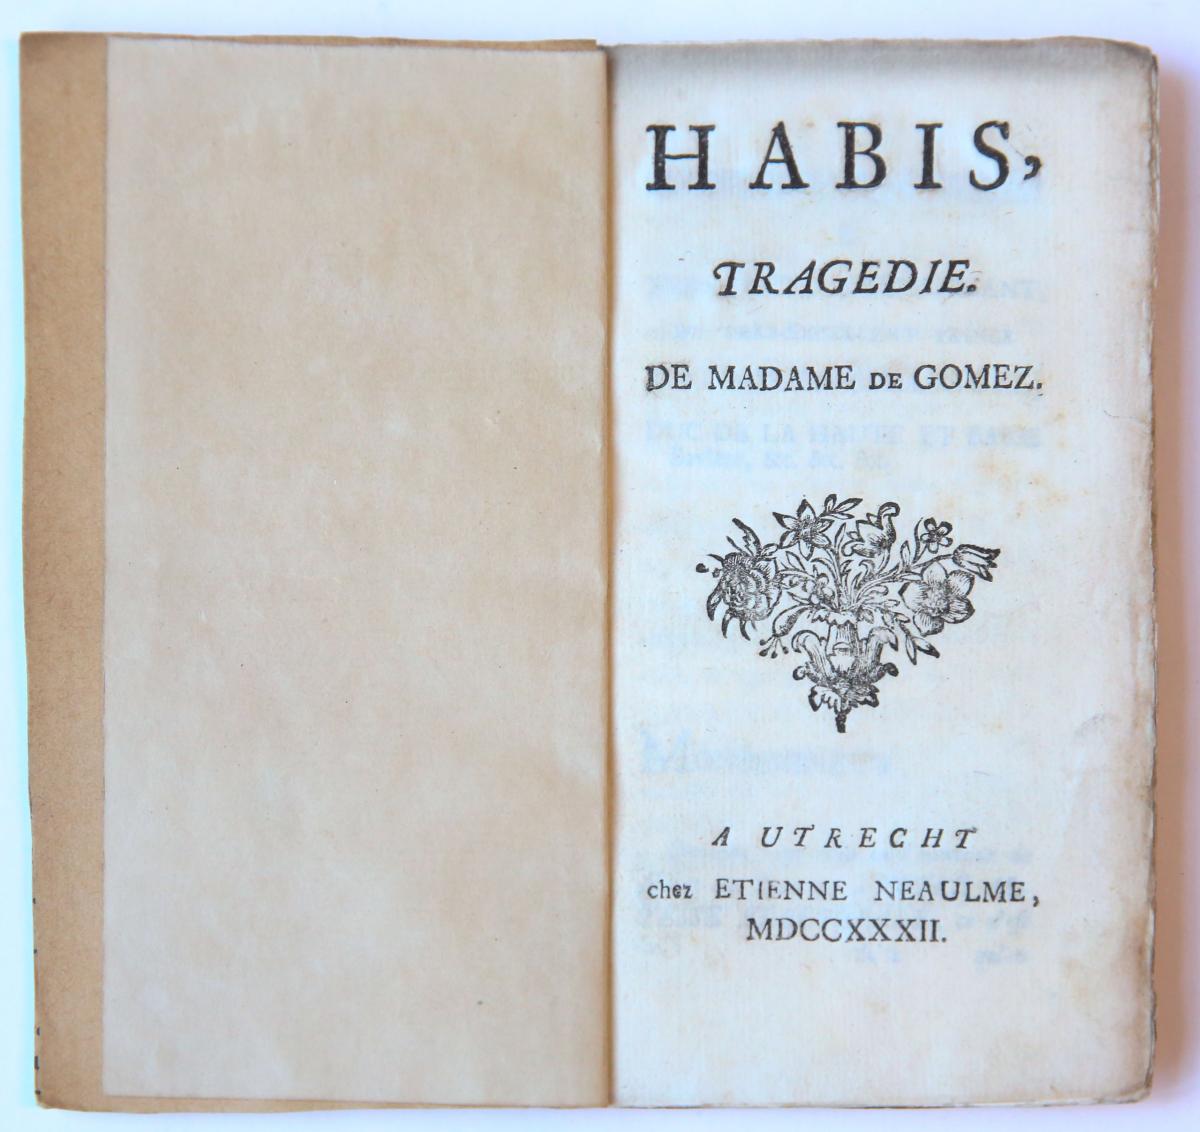 Habis, tragedie. Utrecht, Etienne Neaulme, 1732.